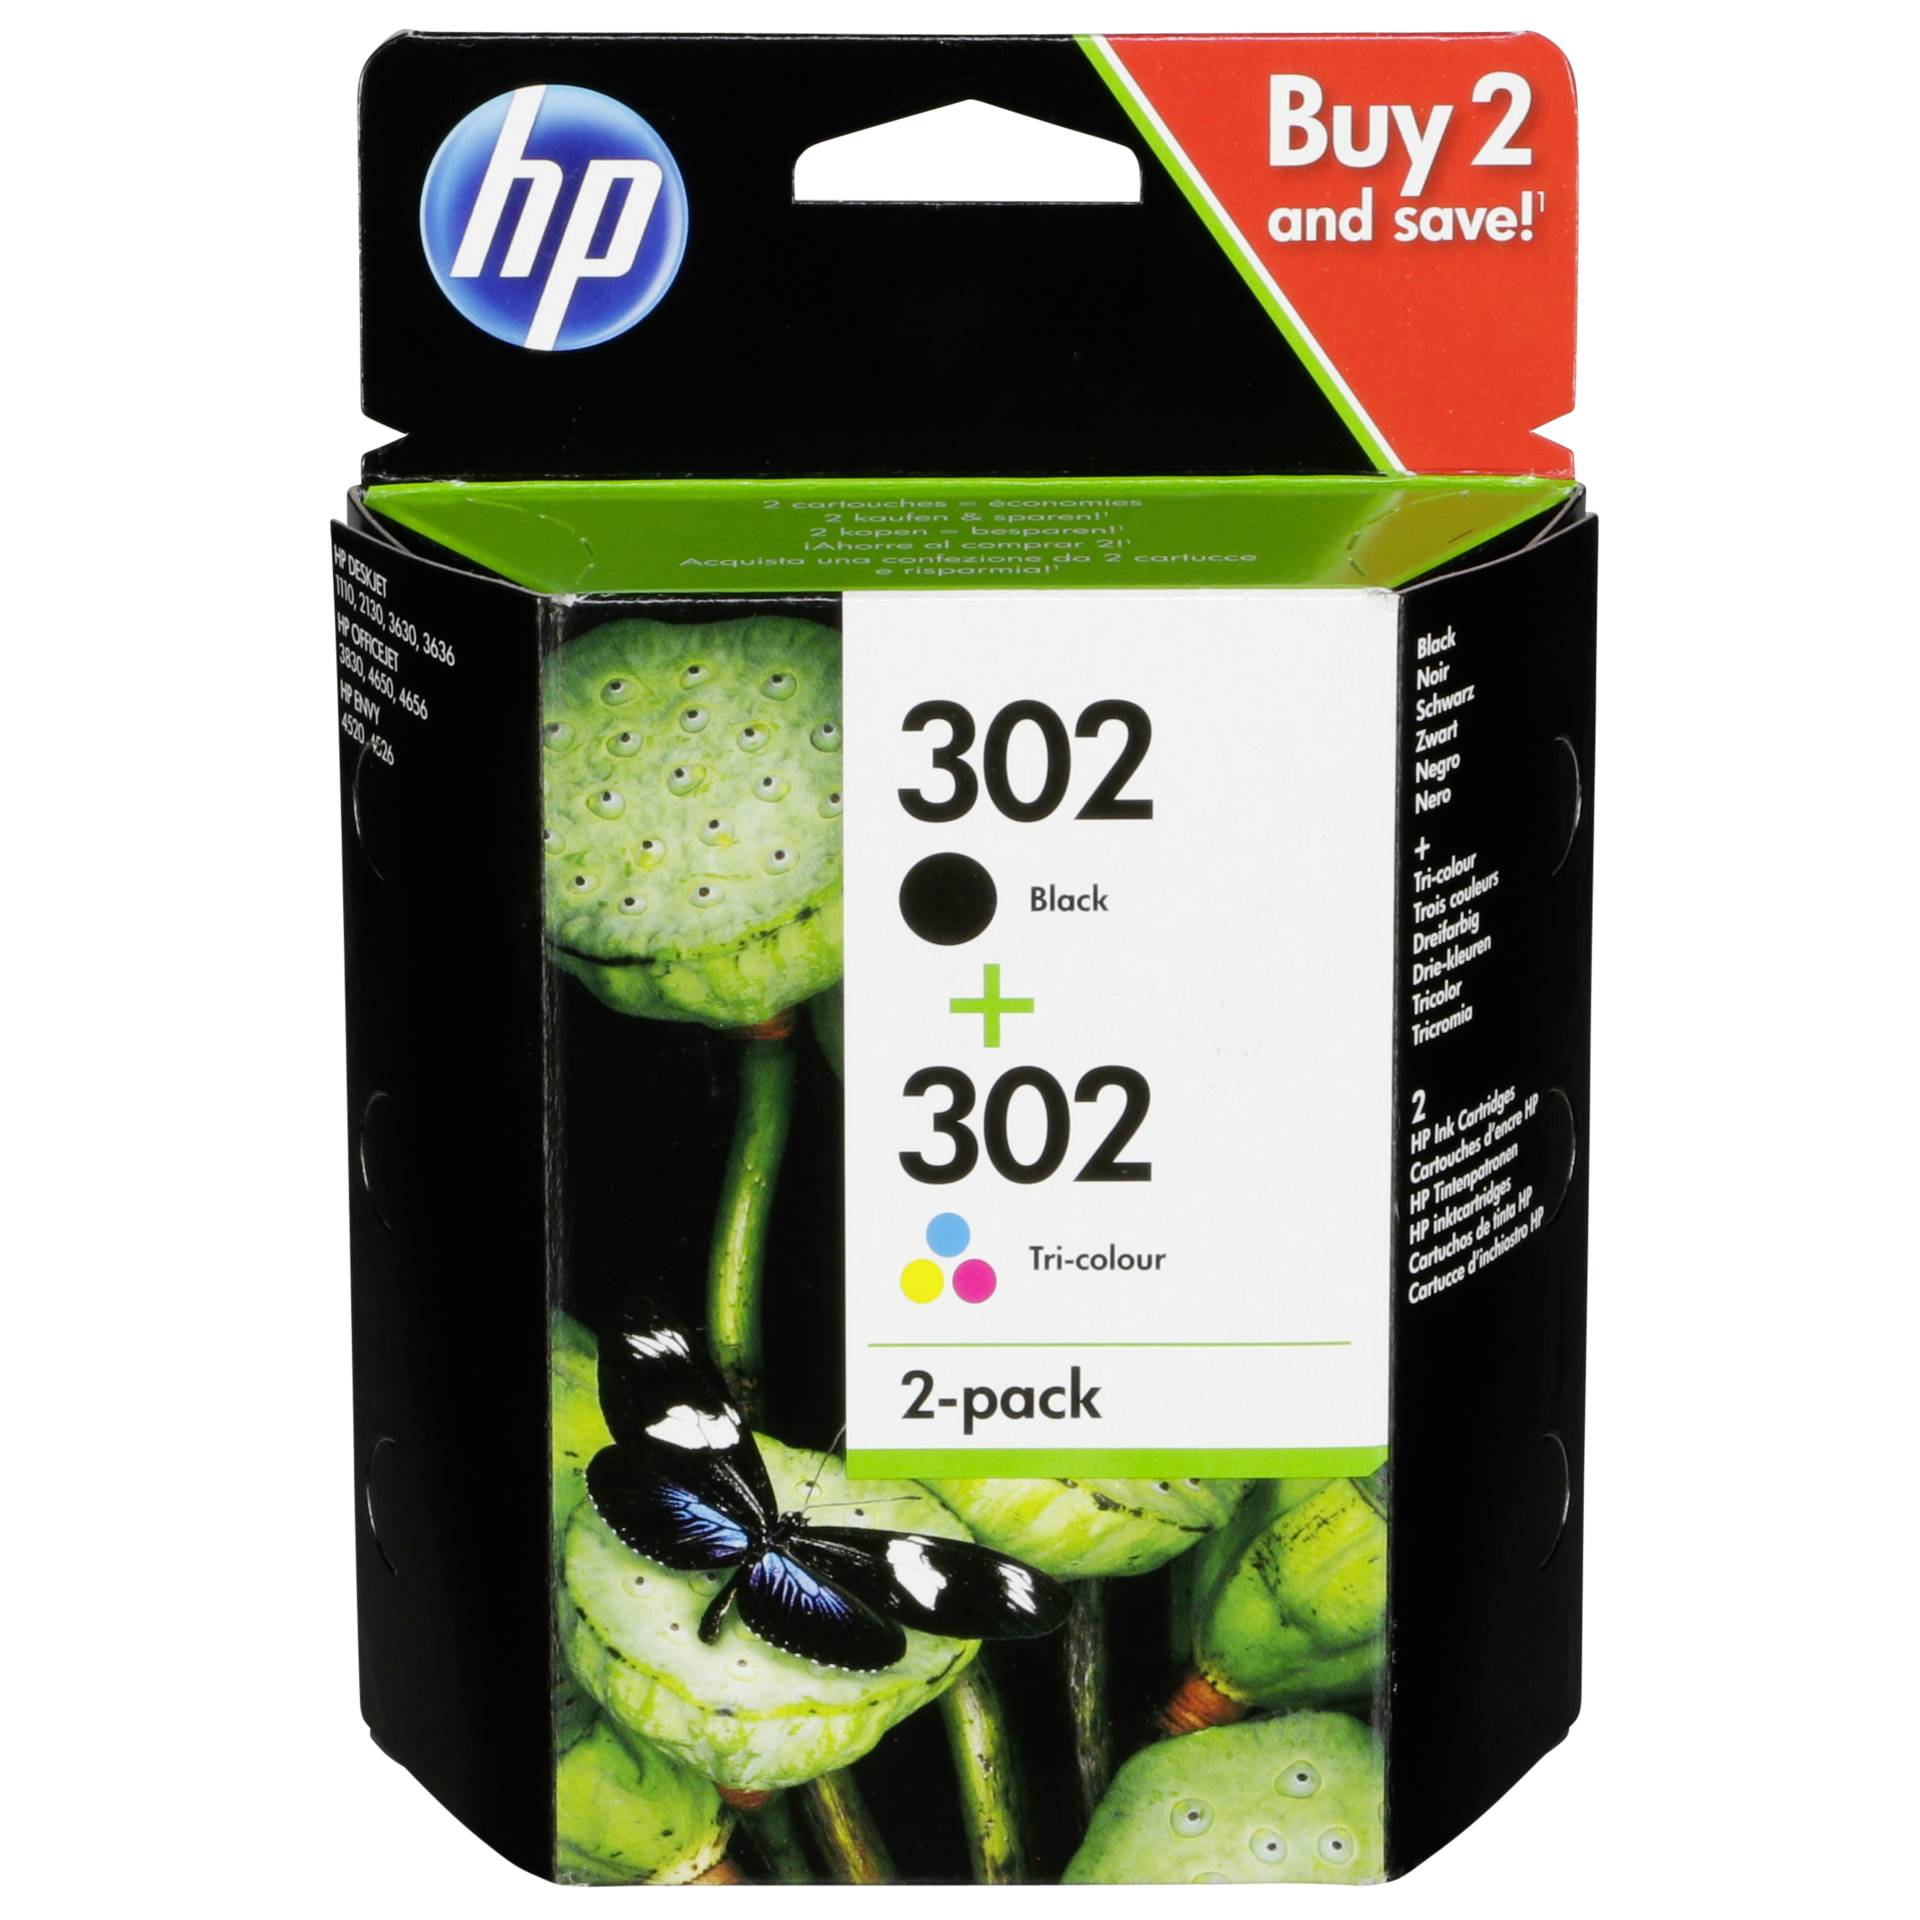 HP Druckkopf mit Tinte 302 schwarz/farbig Kapazität 190 Seiten schwarz, 165 Seiten farbig